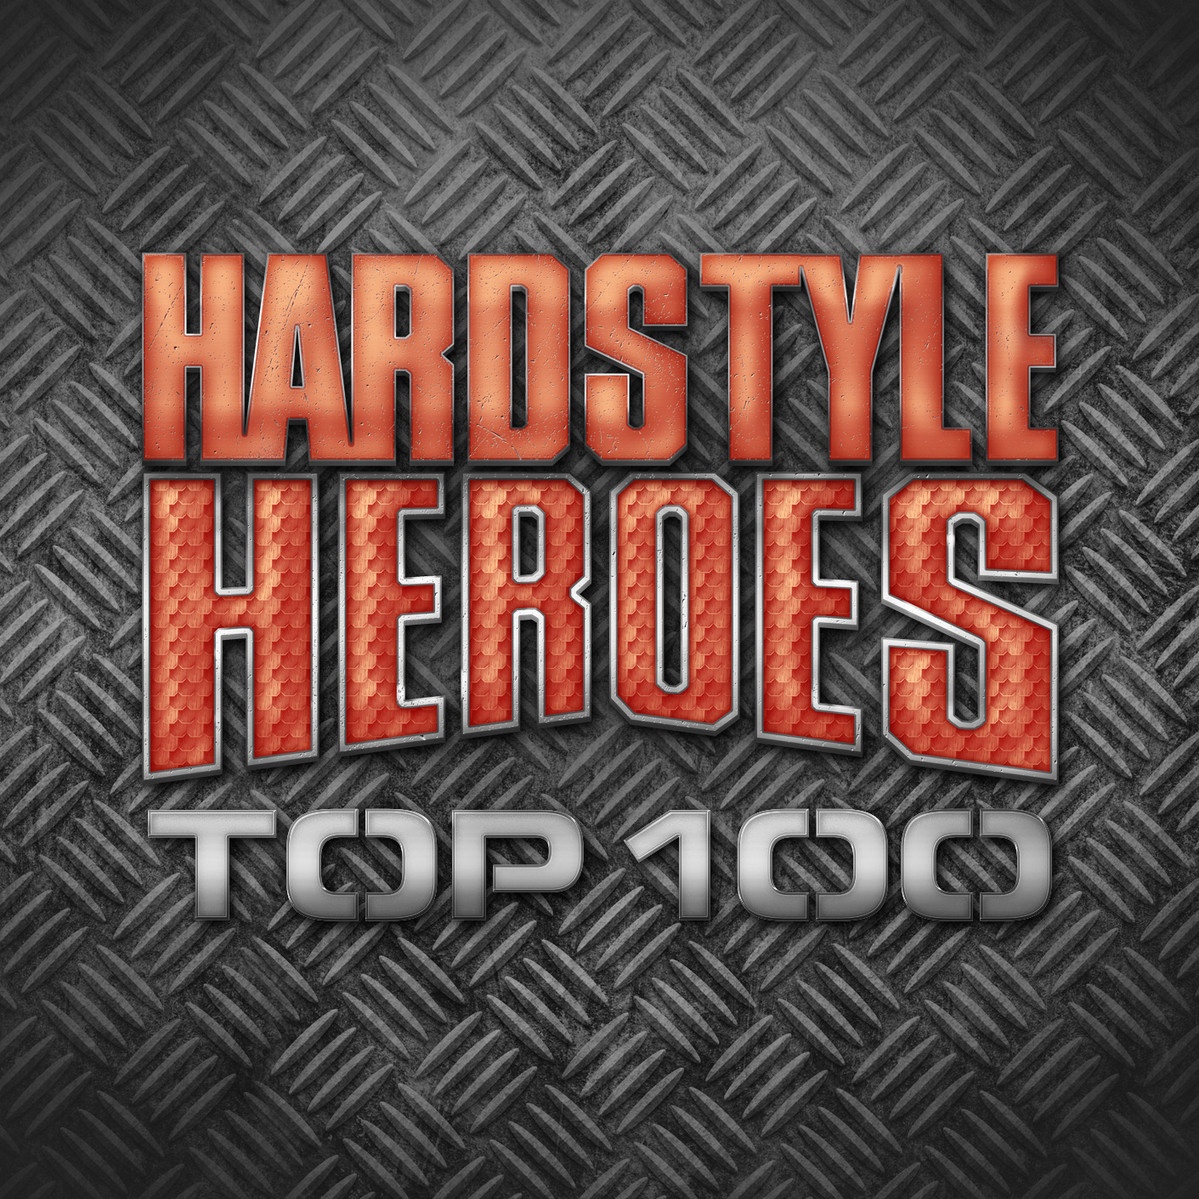 Hardstyle Heroes Top 100